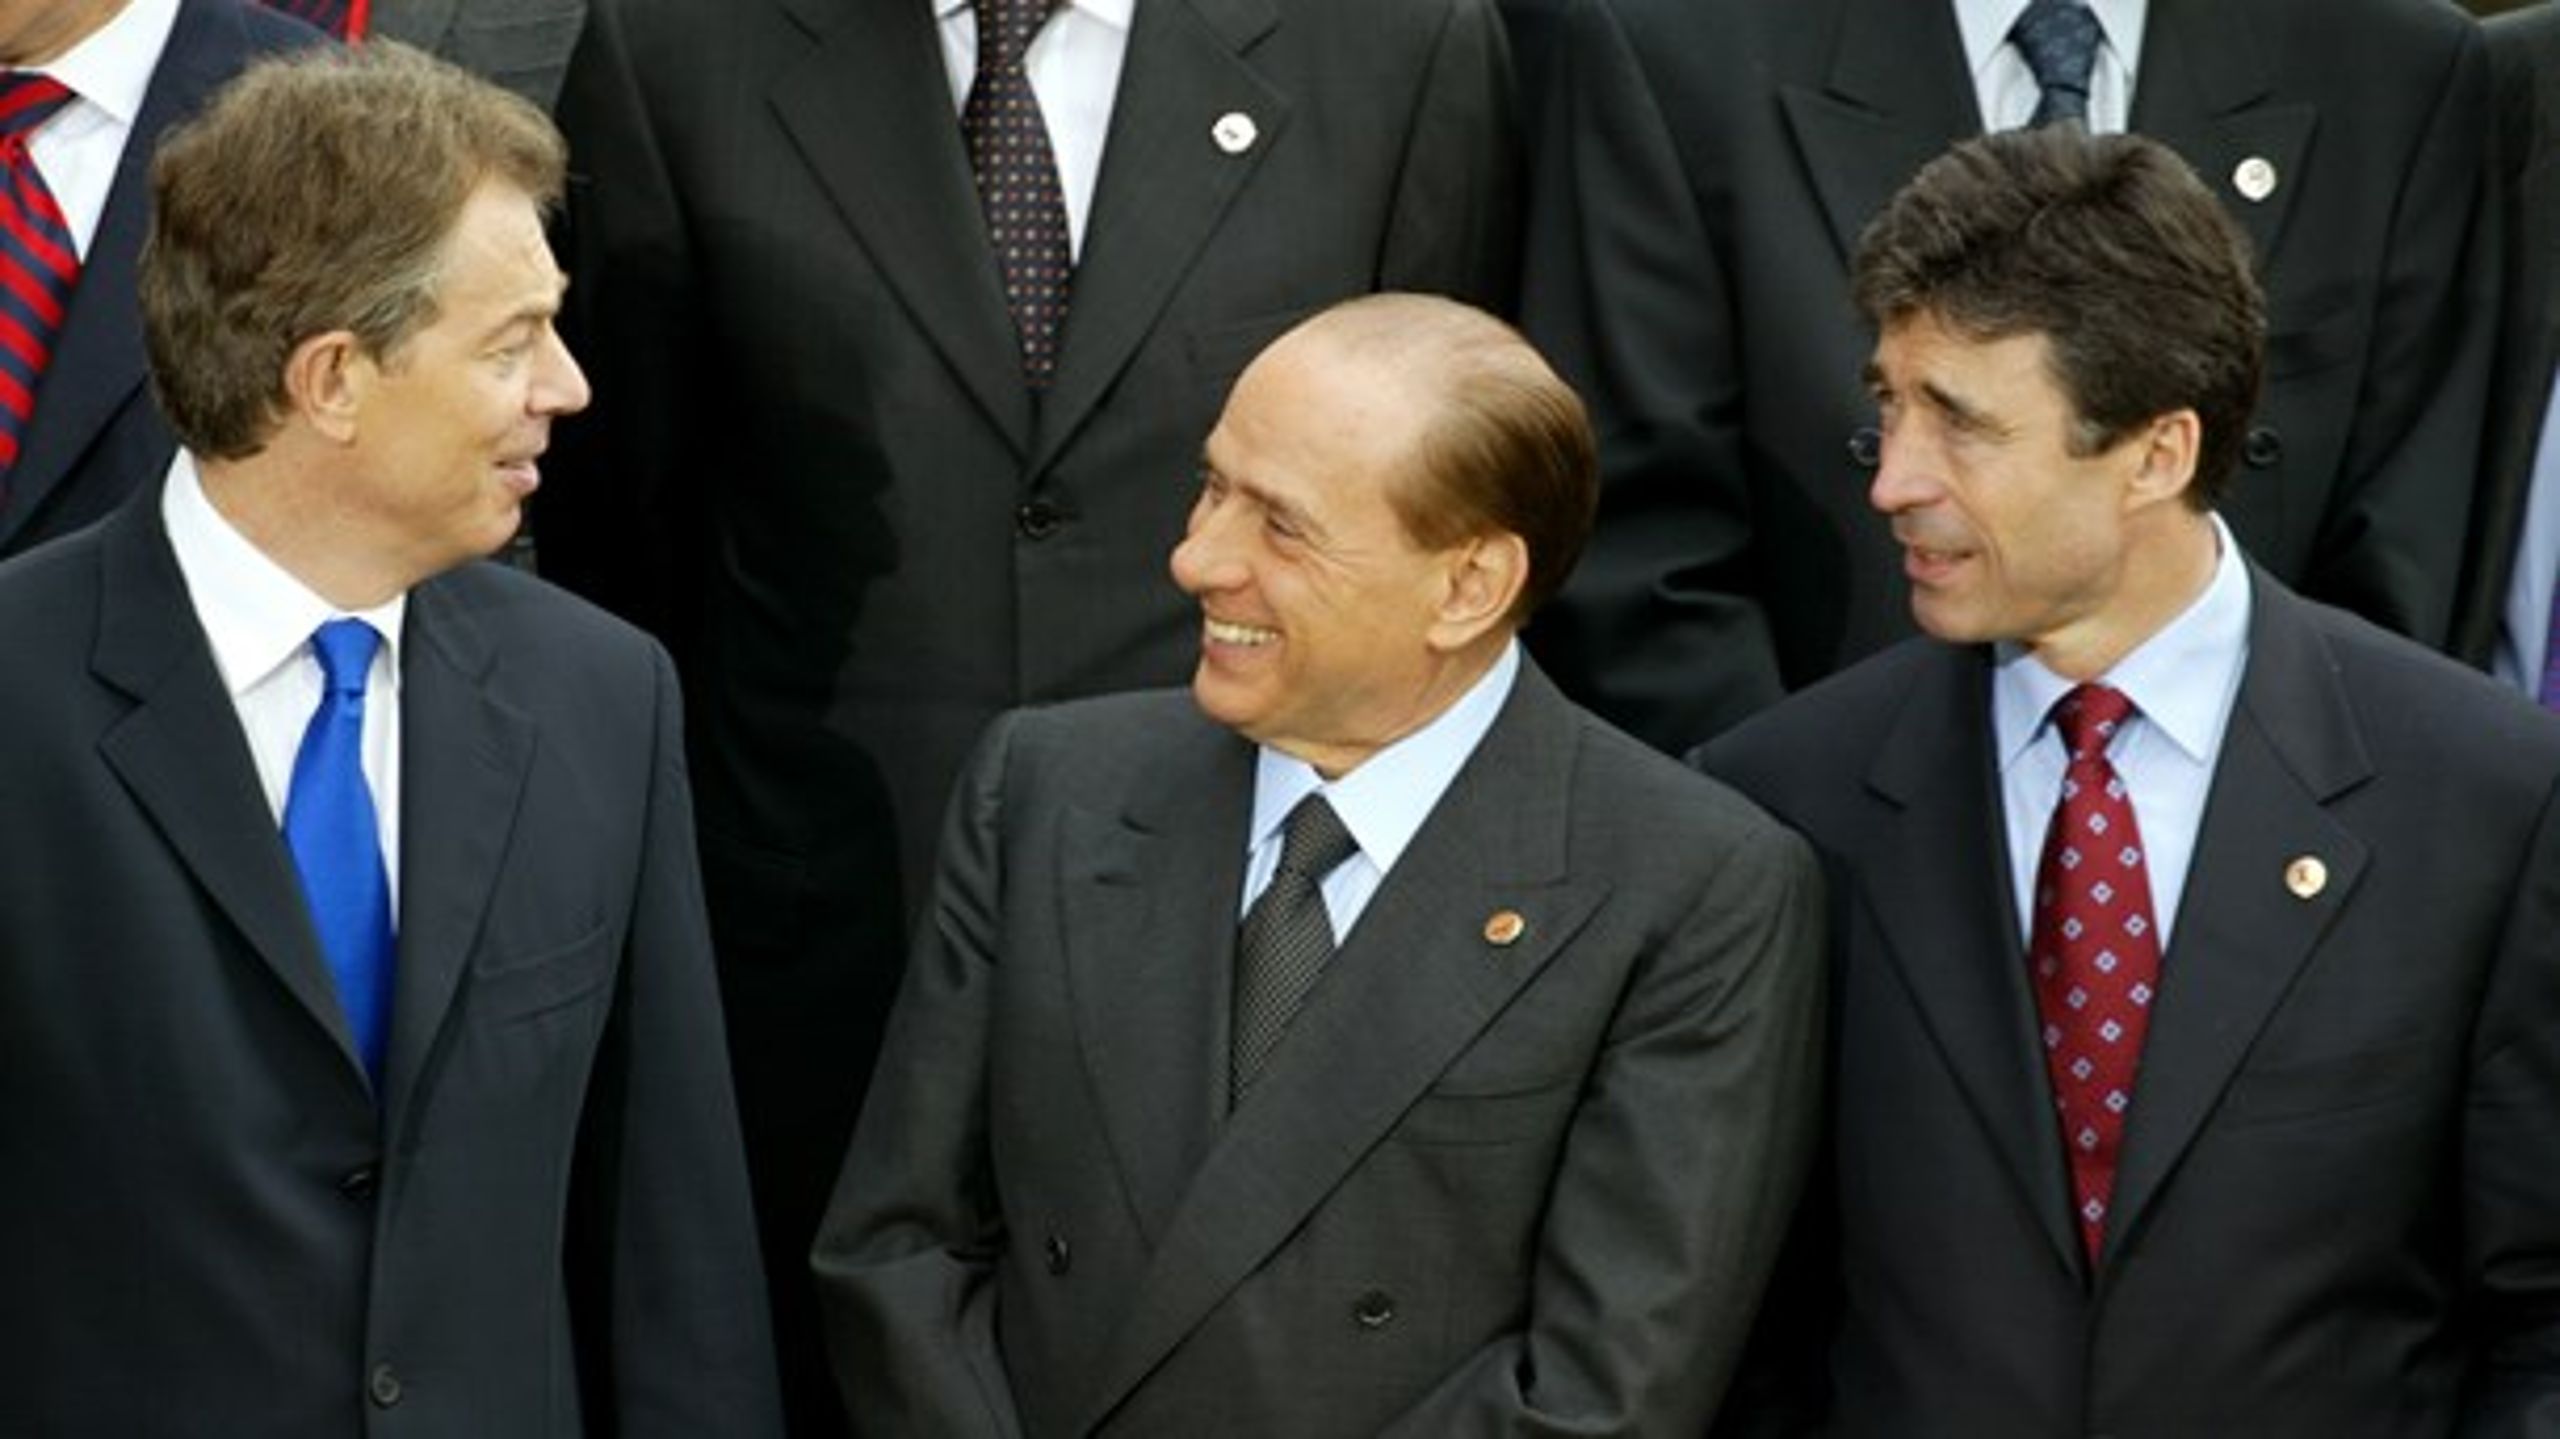 Den alltid hjelpsomme Tony Blair med oppbrettede skjorteermer (om enn ikke på bildet), italienske Silvio Berlusconi med sitt brede smil, og danske Anders Fogh Rasmussen&nbsp;–&nbsp;den «most handsome» av alle statslederne og regjeringssjefene ifølge Berlusconi.